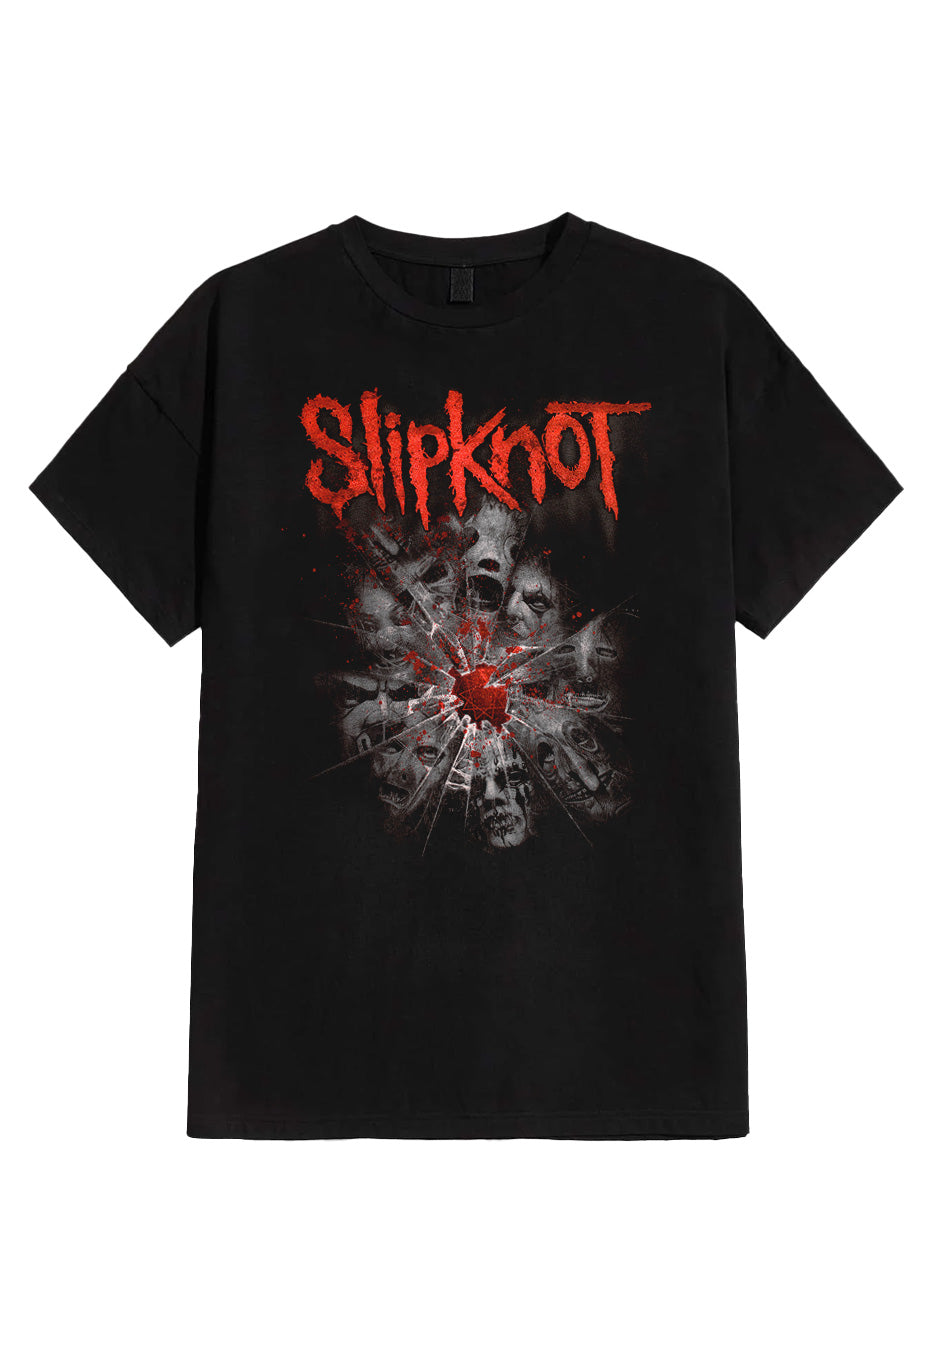 Slipknot - Shattered - T-Shirt